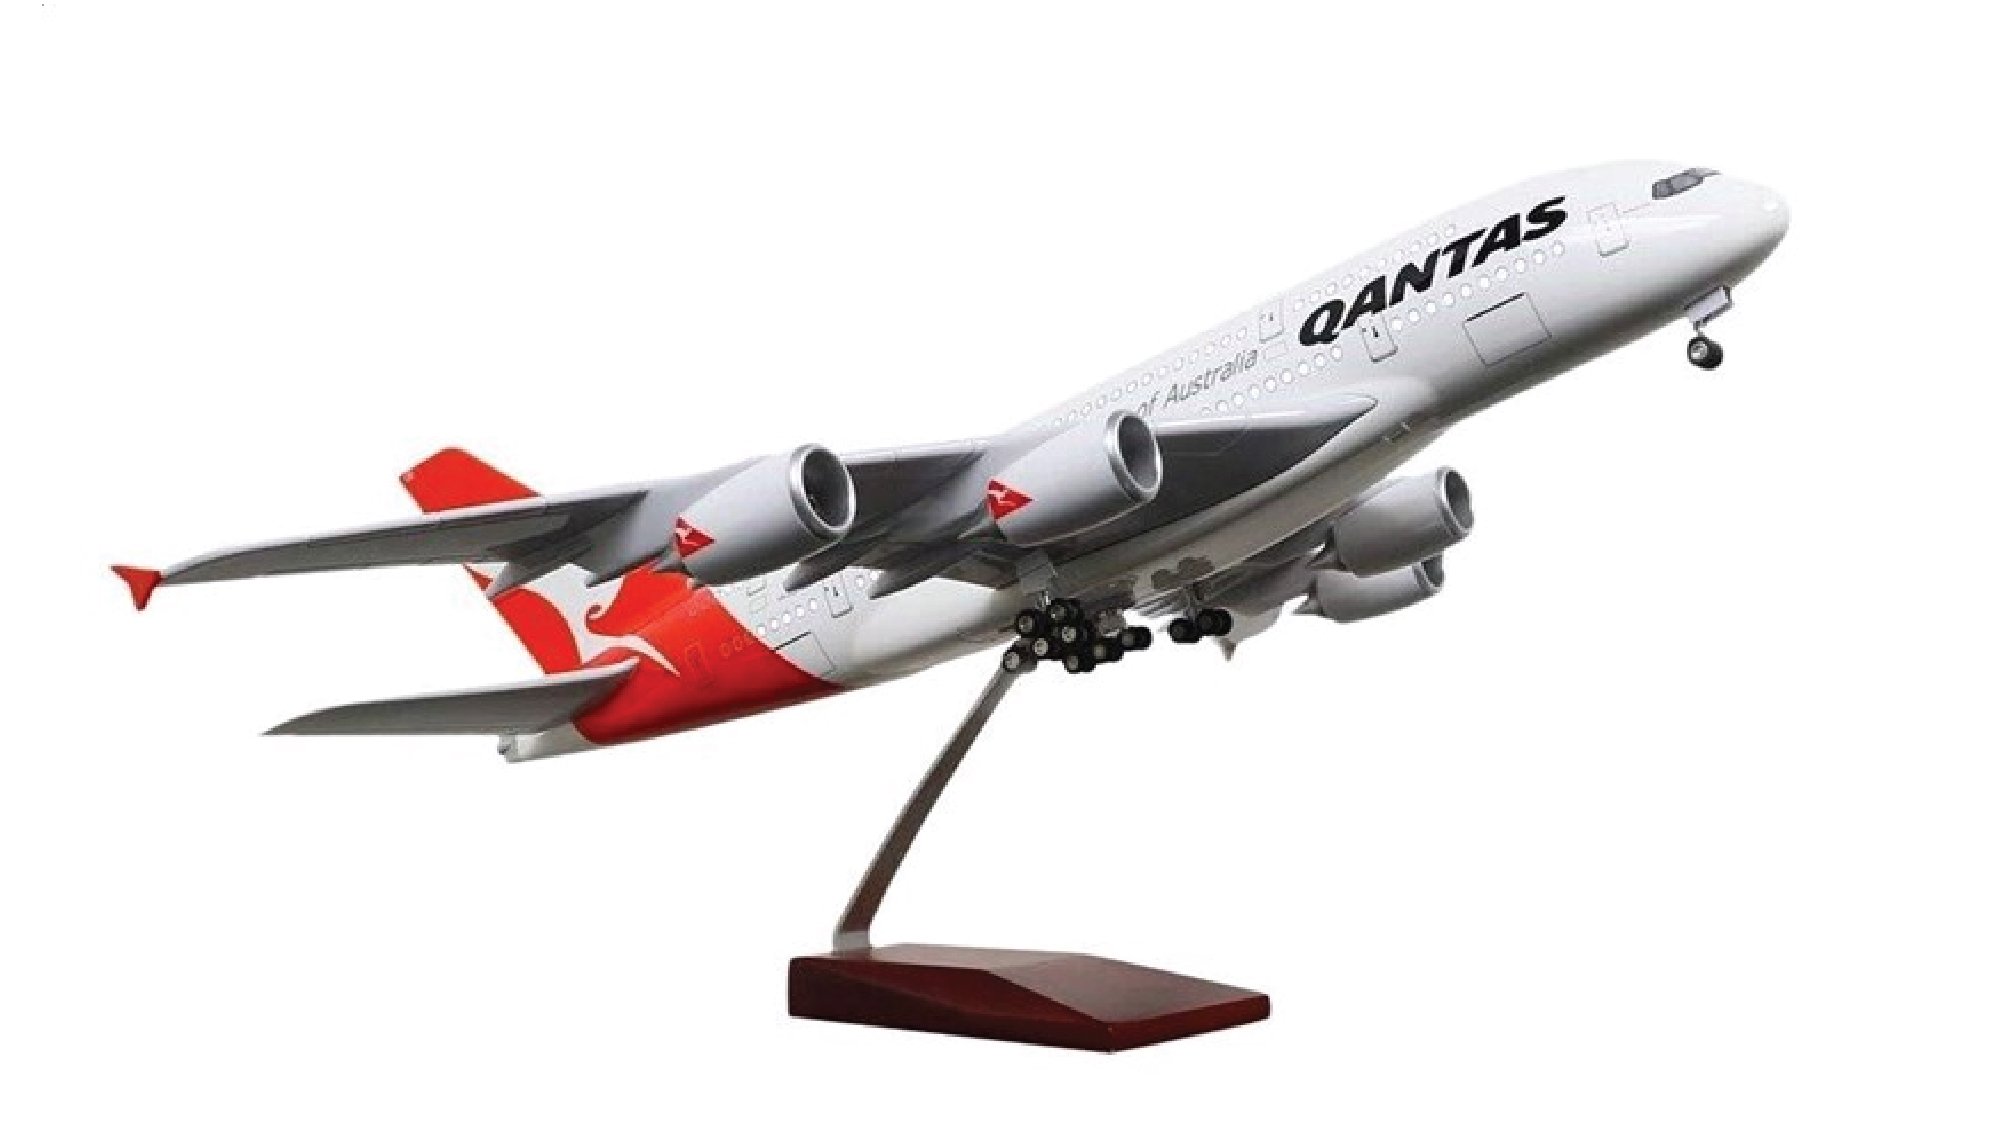  Mô hình máy bay Australia Qantas Airbus A380 47cm tỉ lệ 1:157 có đèn led tự động theo tiếng vỗ tay hoặc chạm MB47025 